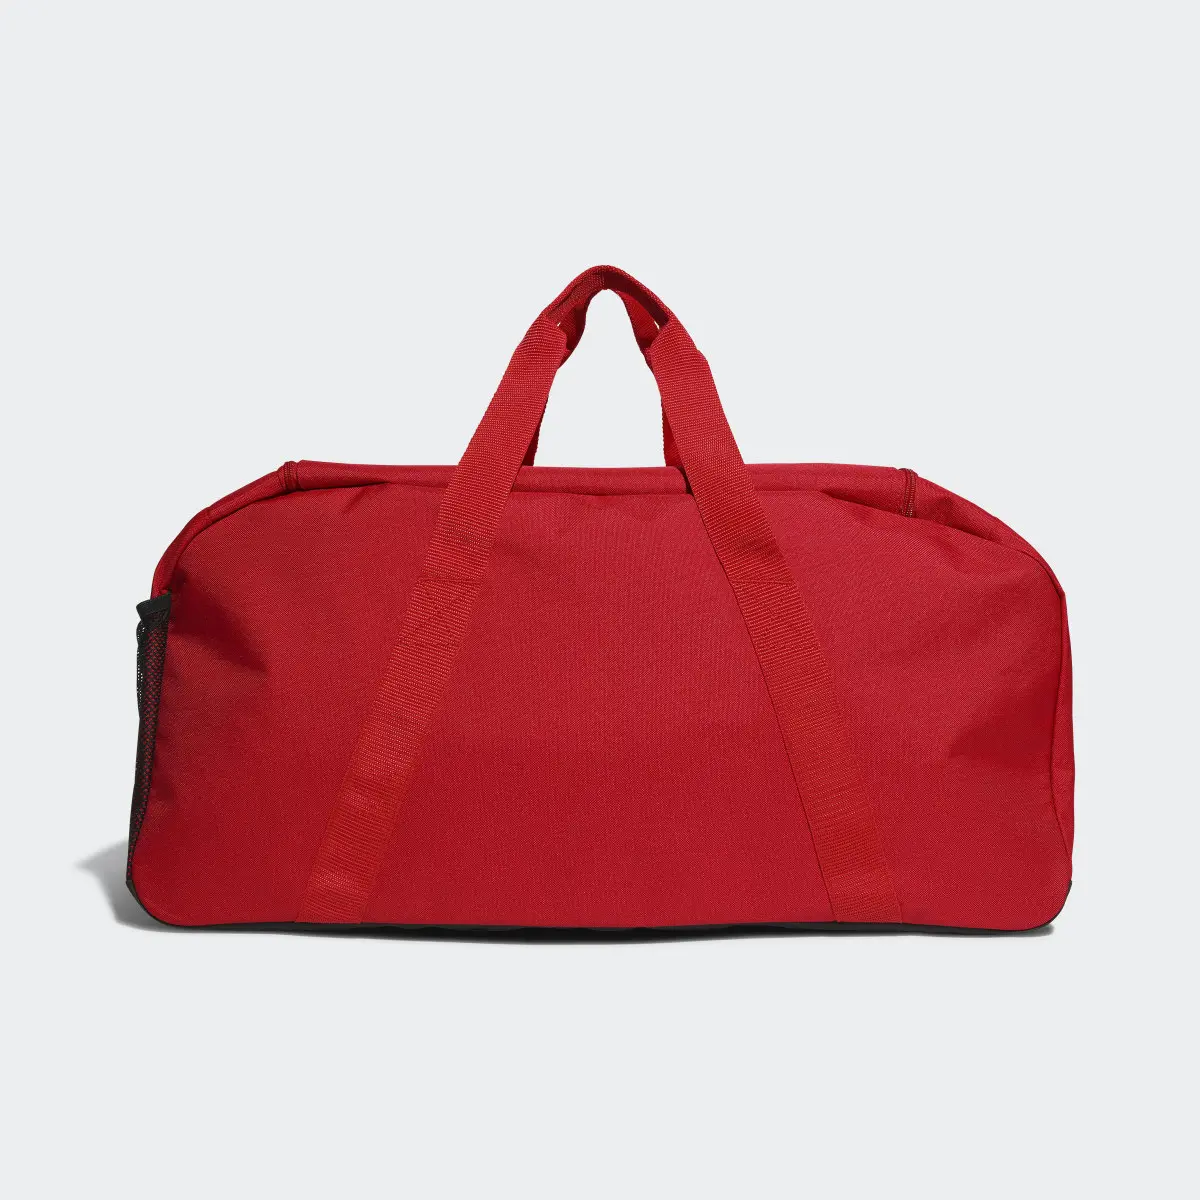 Adidas Tiro League Duffel Bag Medium. 3